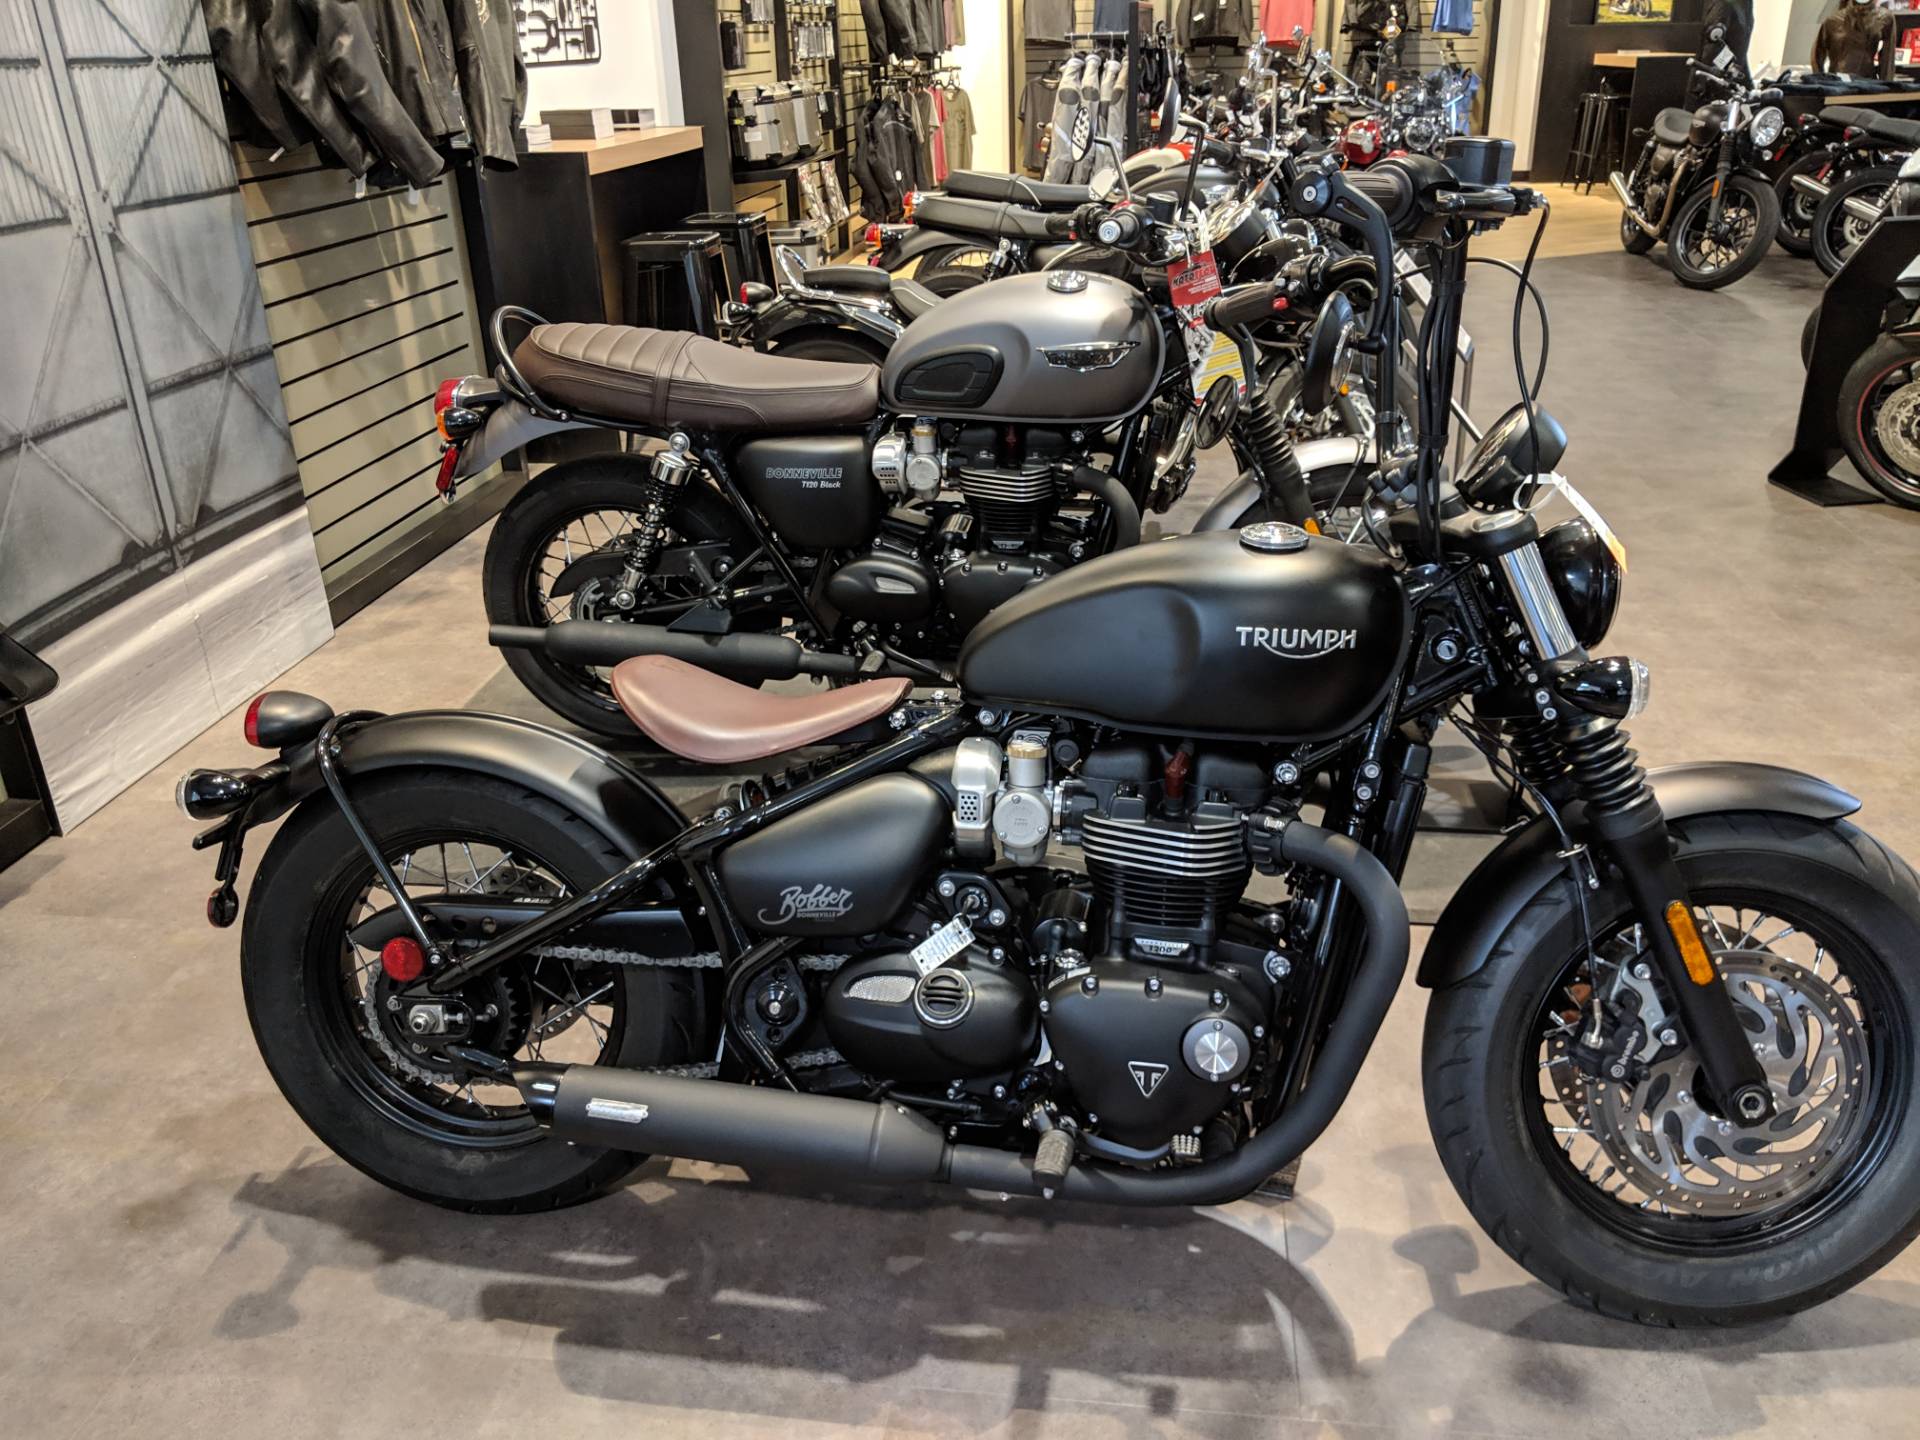 New 2018 Triumph Bonneville Bobber Black Matte Black Motorcycles In Rapid City Sd 3020